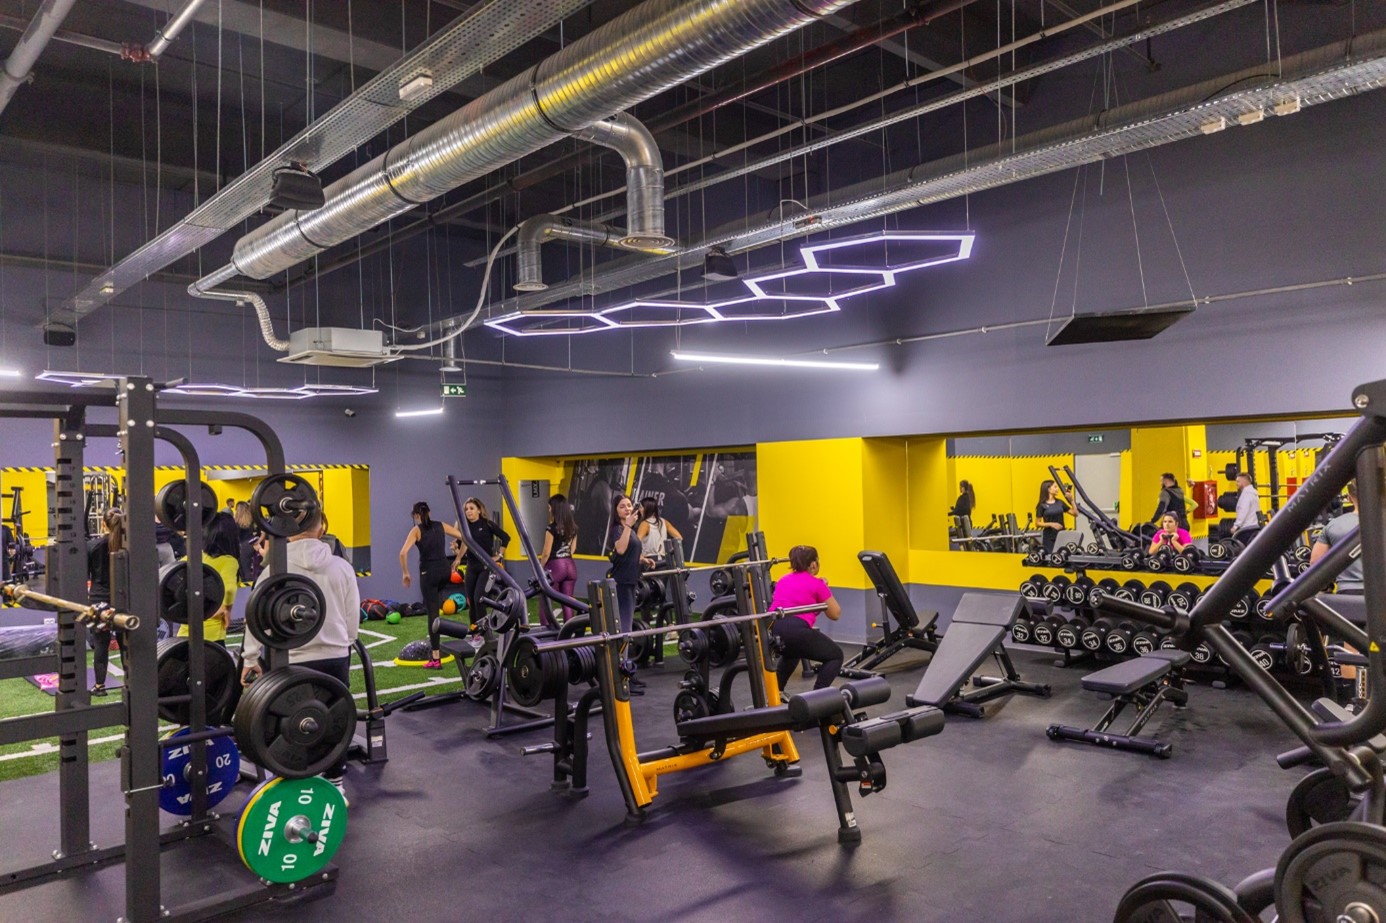 Infuzie de energie la Promenada Sibiu. S-a deschis noul centru de fitness și aerobic Stay Fit Gym